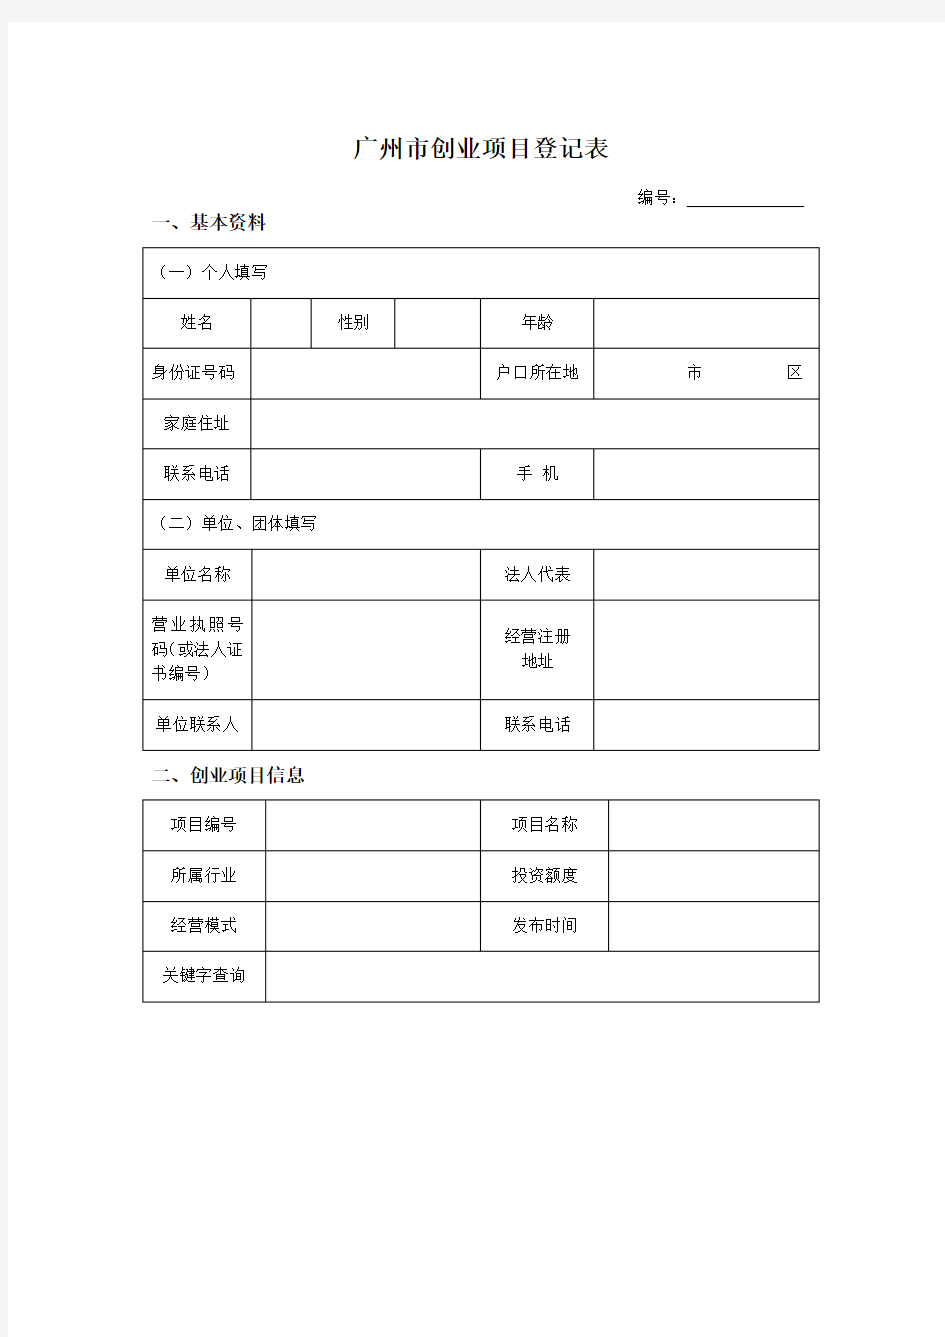 广州市创业项目登记表